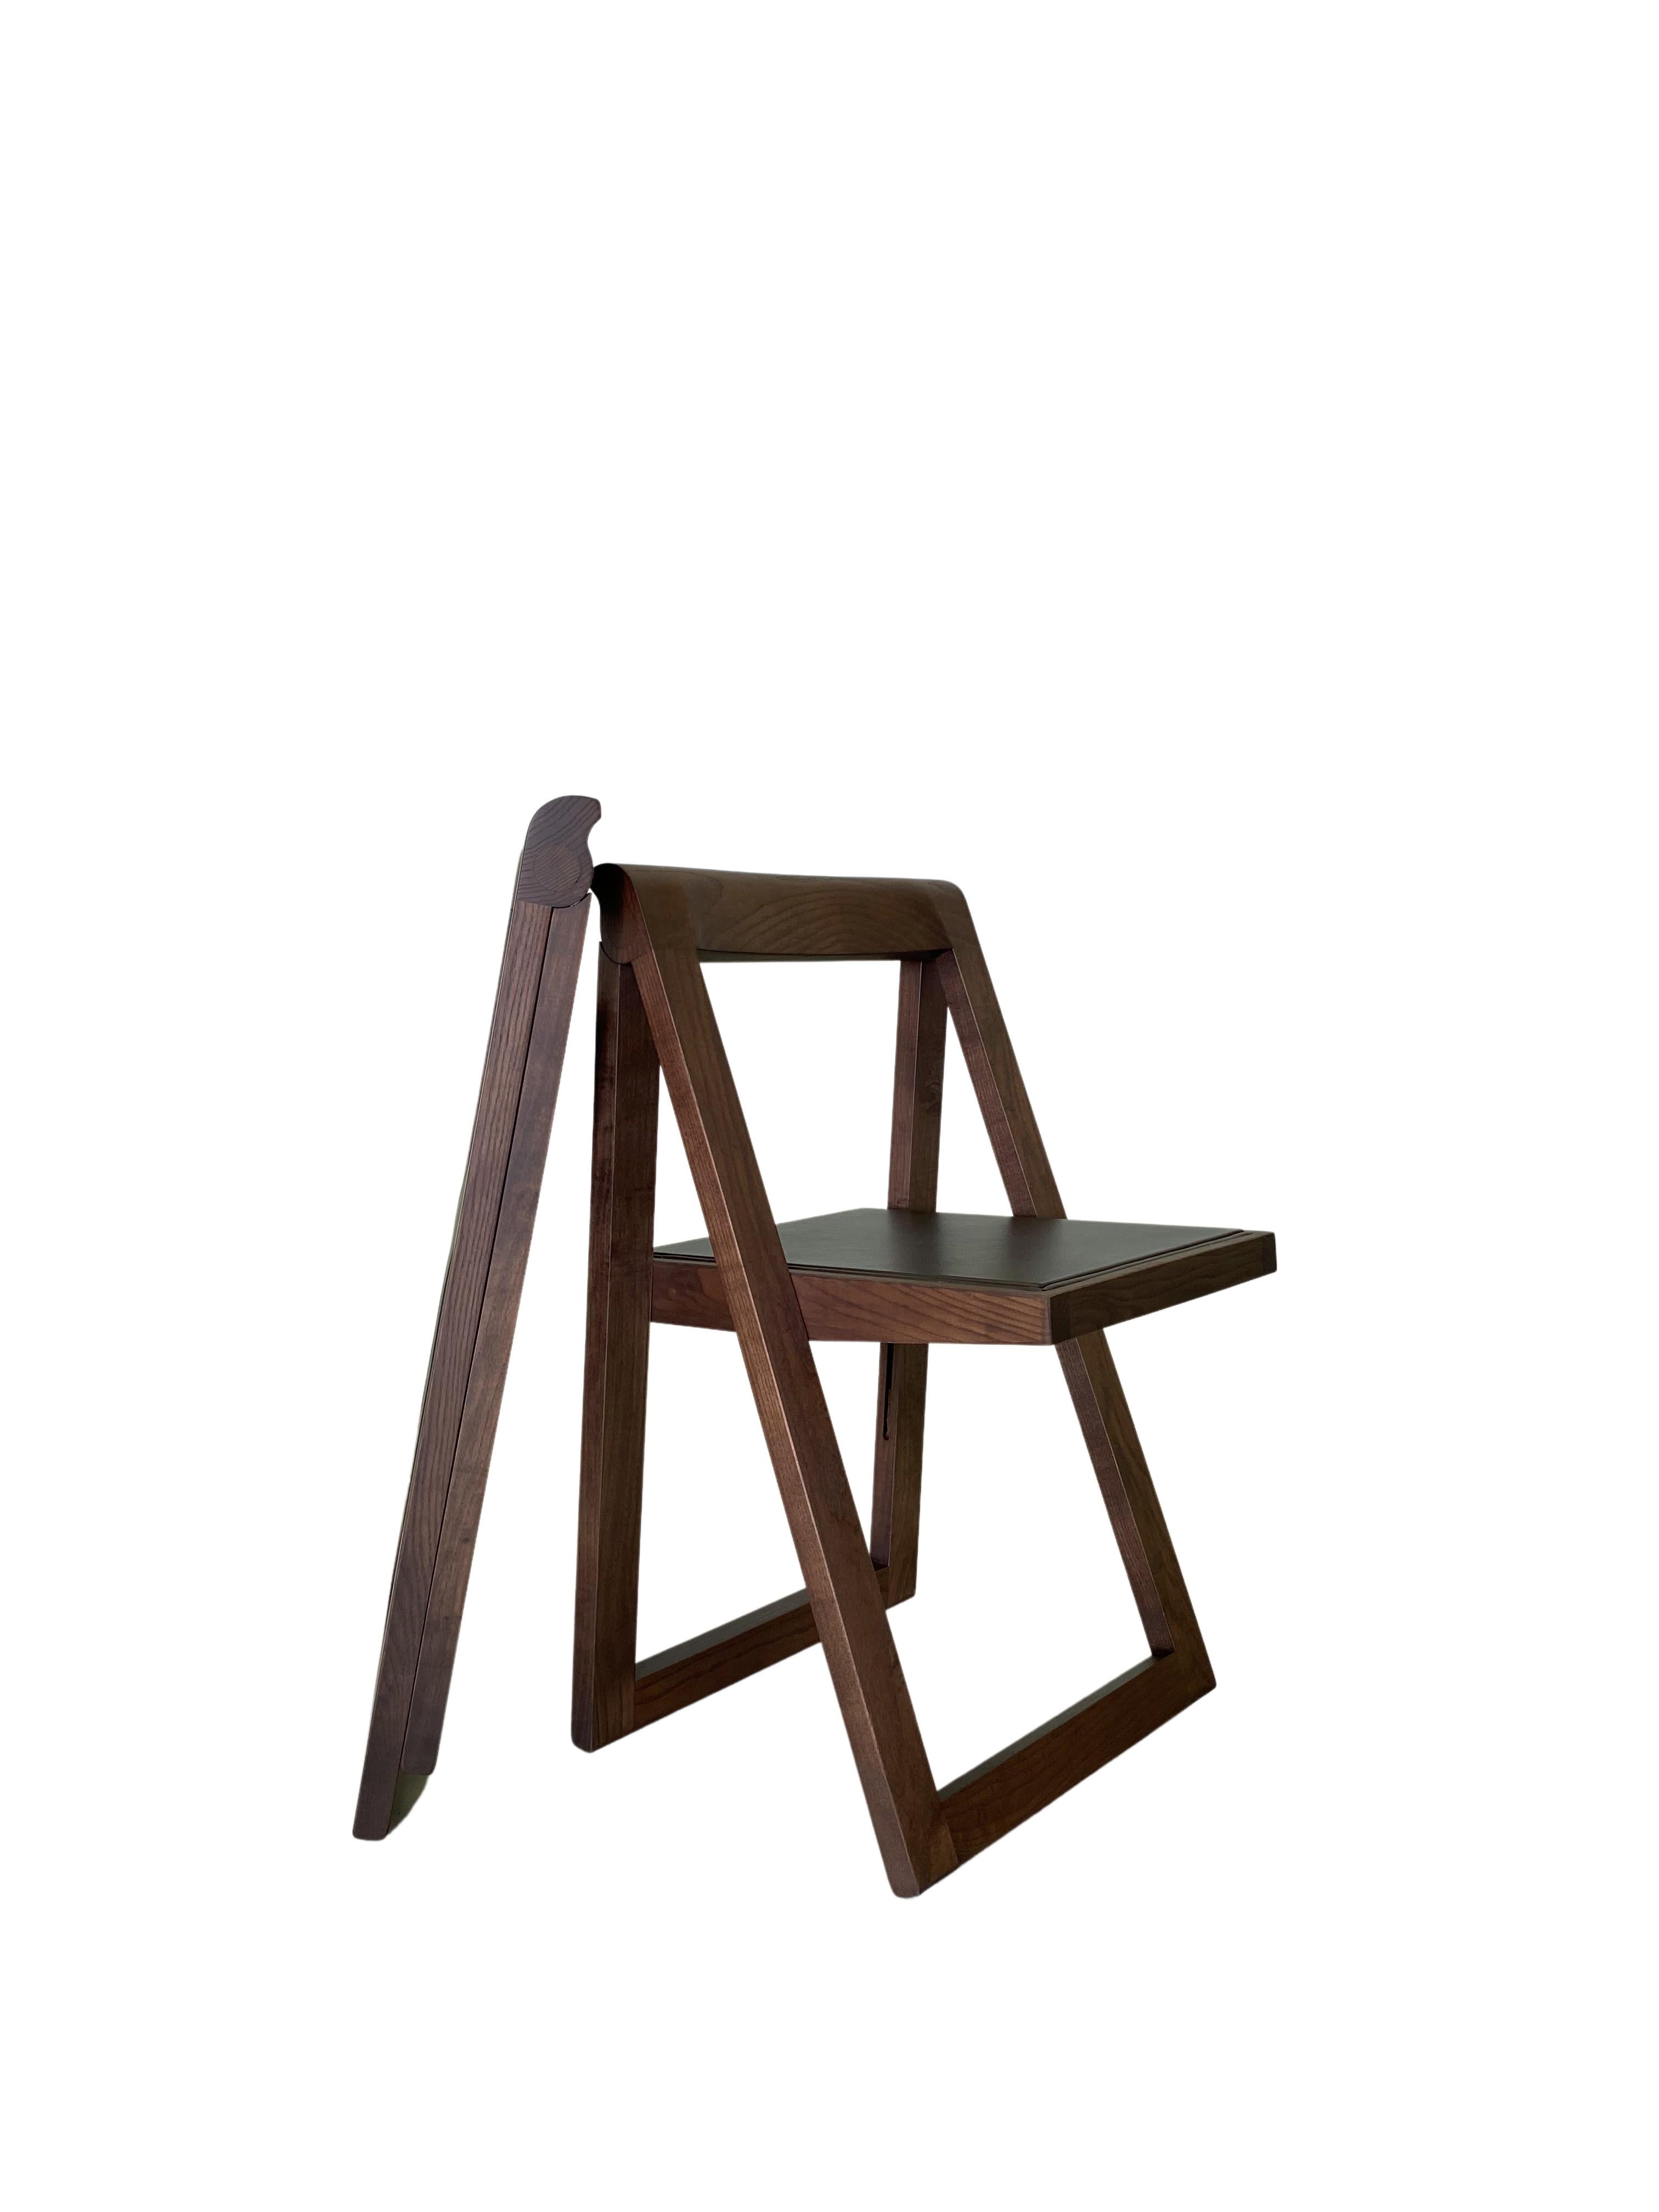 Frêne Morelato, chaise pliante en frêne et teck